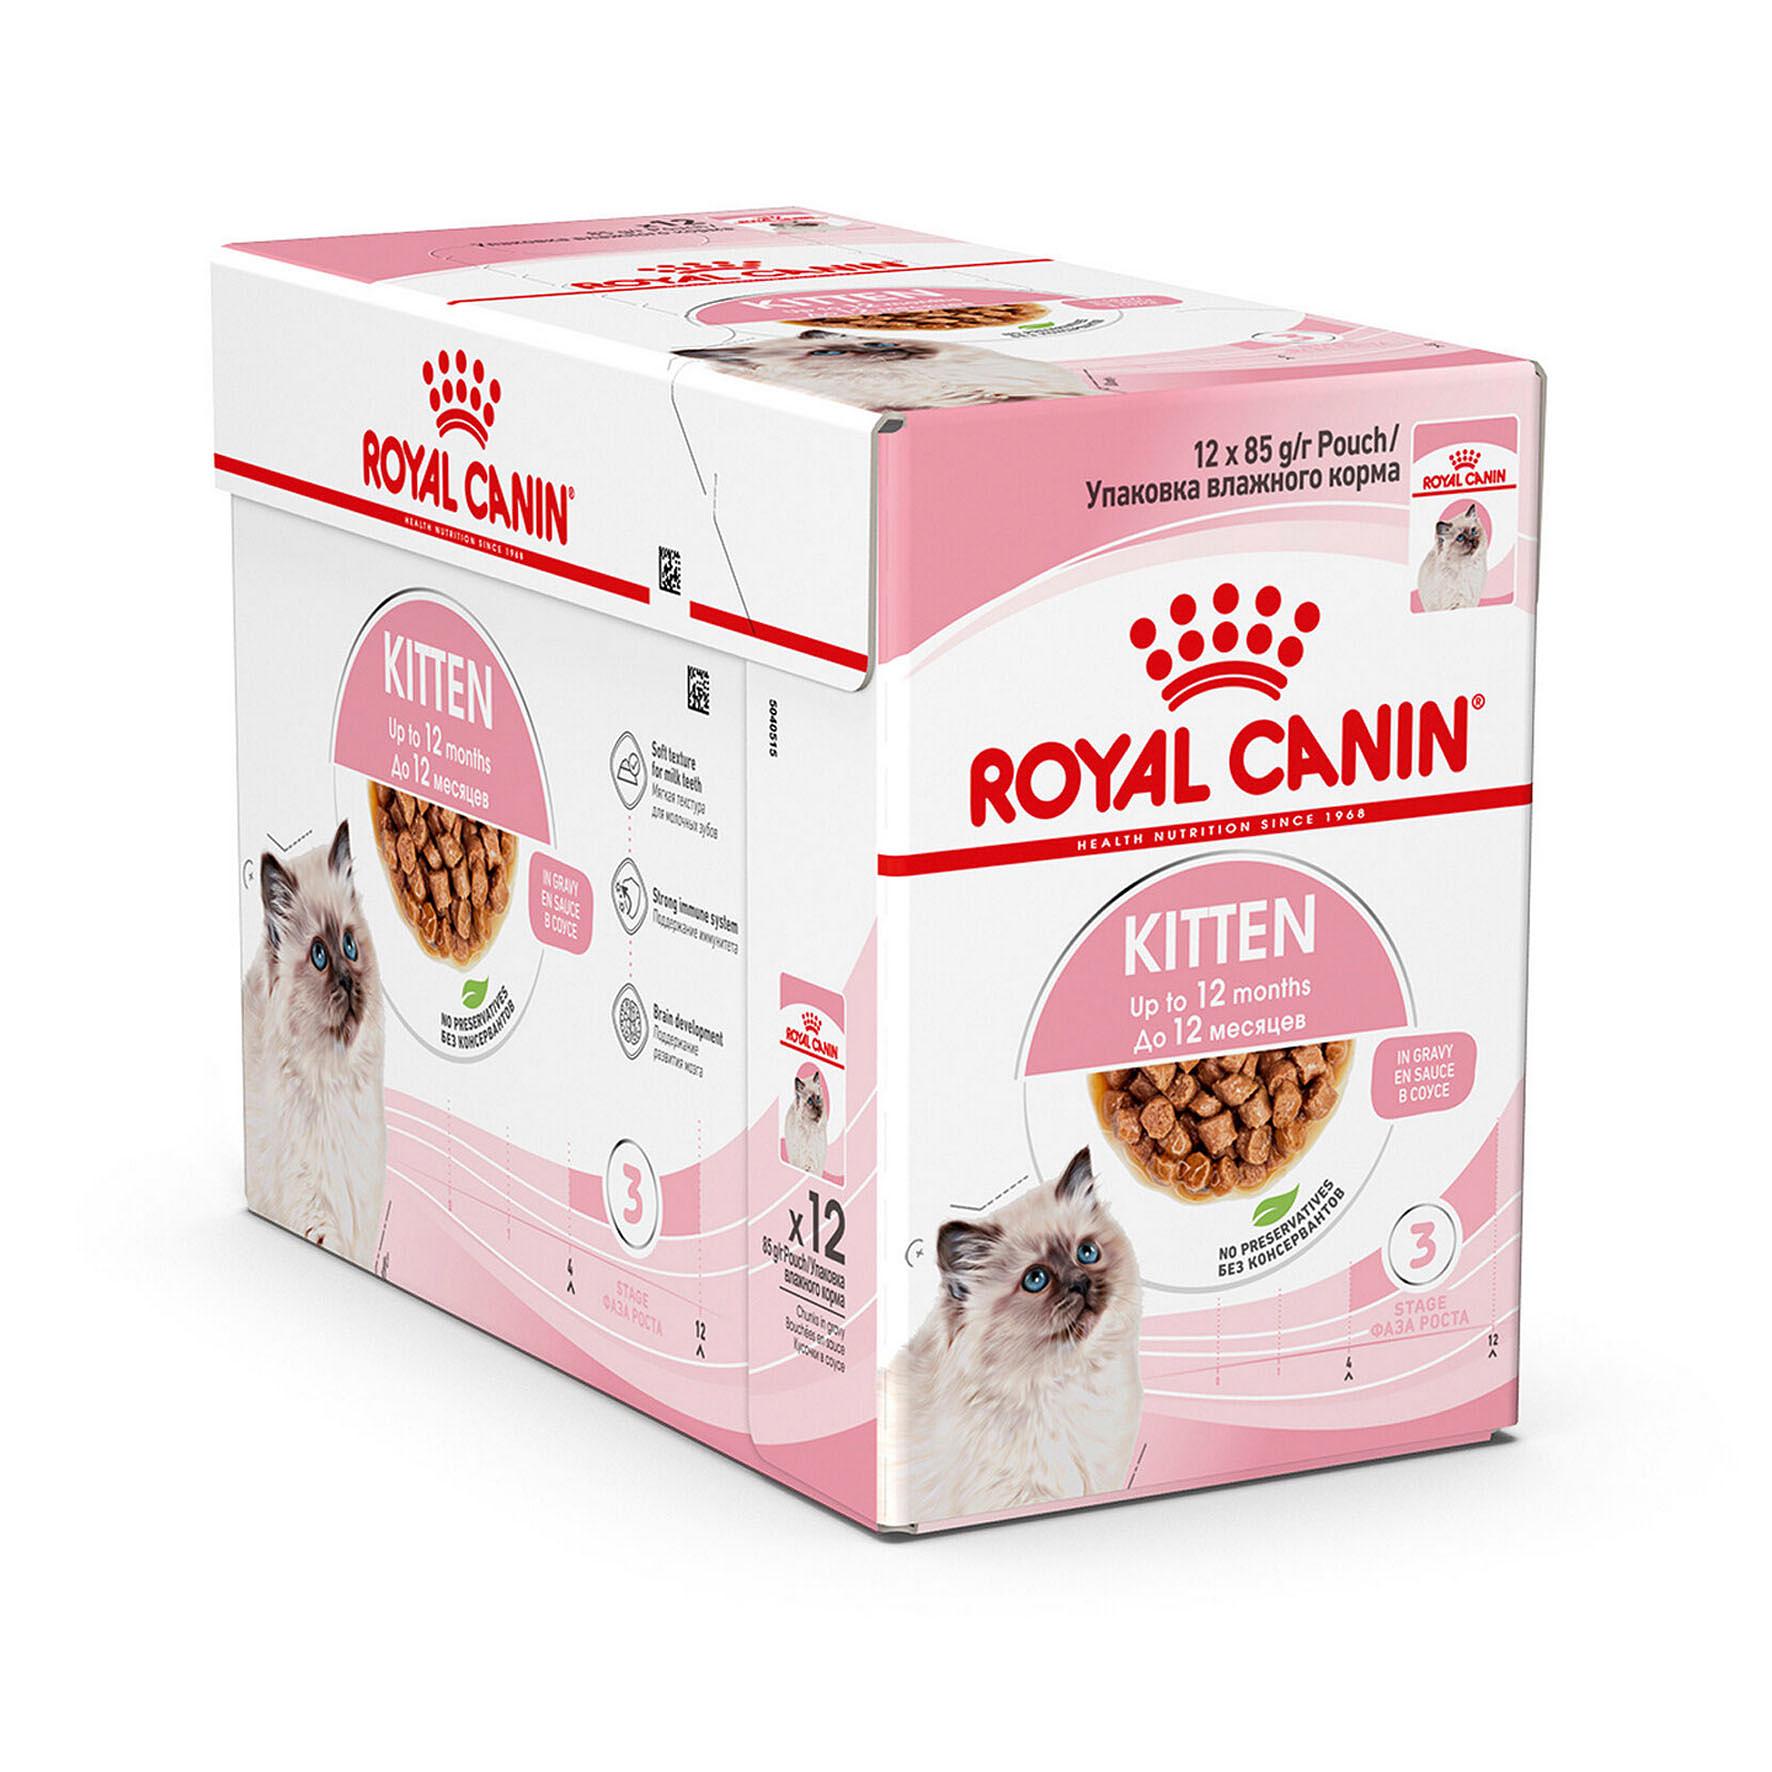 Royal Canin Kitten Sauce 12x85g